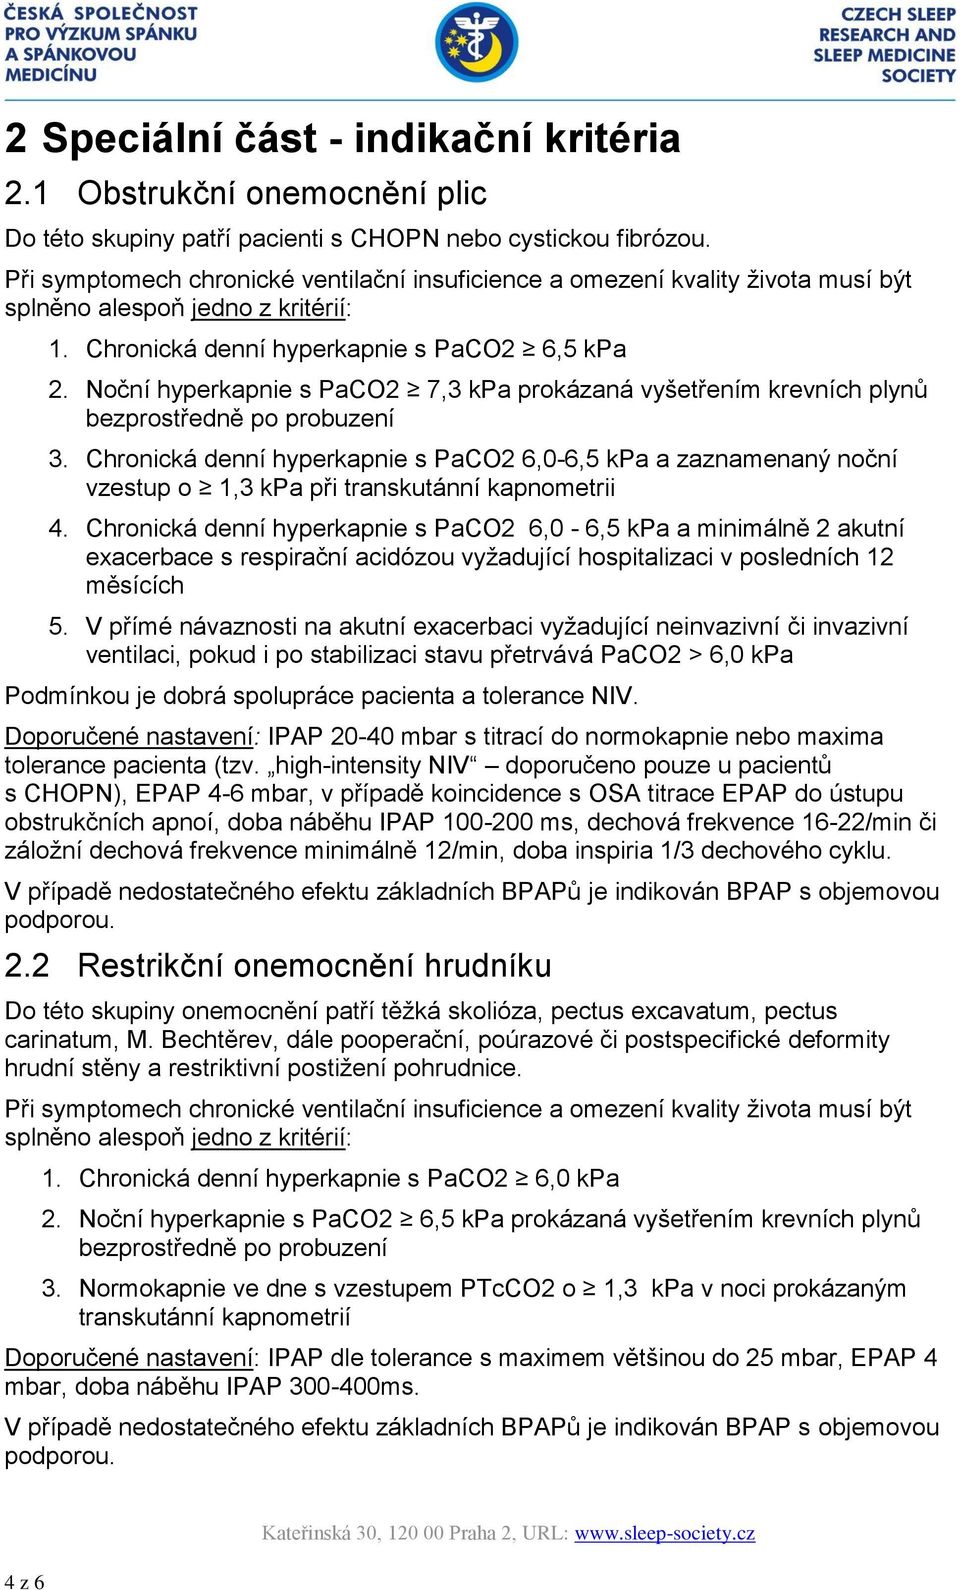 Noční hyperkapnie s PaCO2 7,3 kpa prokázaná vyšetřením krevních plynů 3. Chronická denní hyperkapnie s PaCO2 6,0-6,5 kpa a zaznamenaný noční vzestup o 1,3 kpa při transkutánní kapnometrii 4.